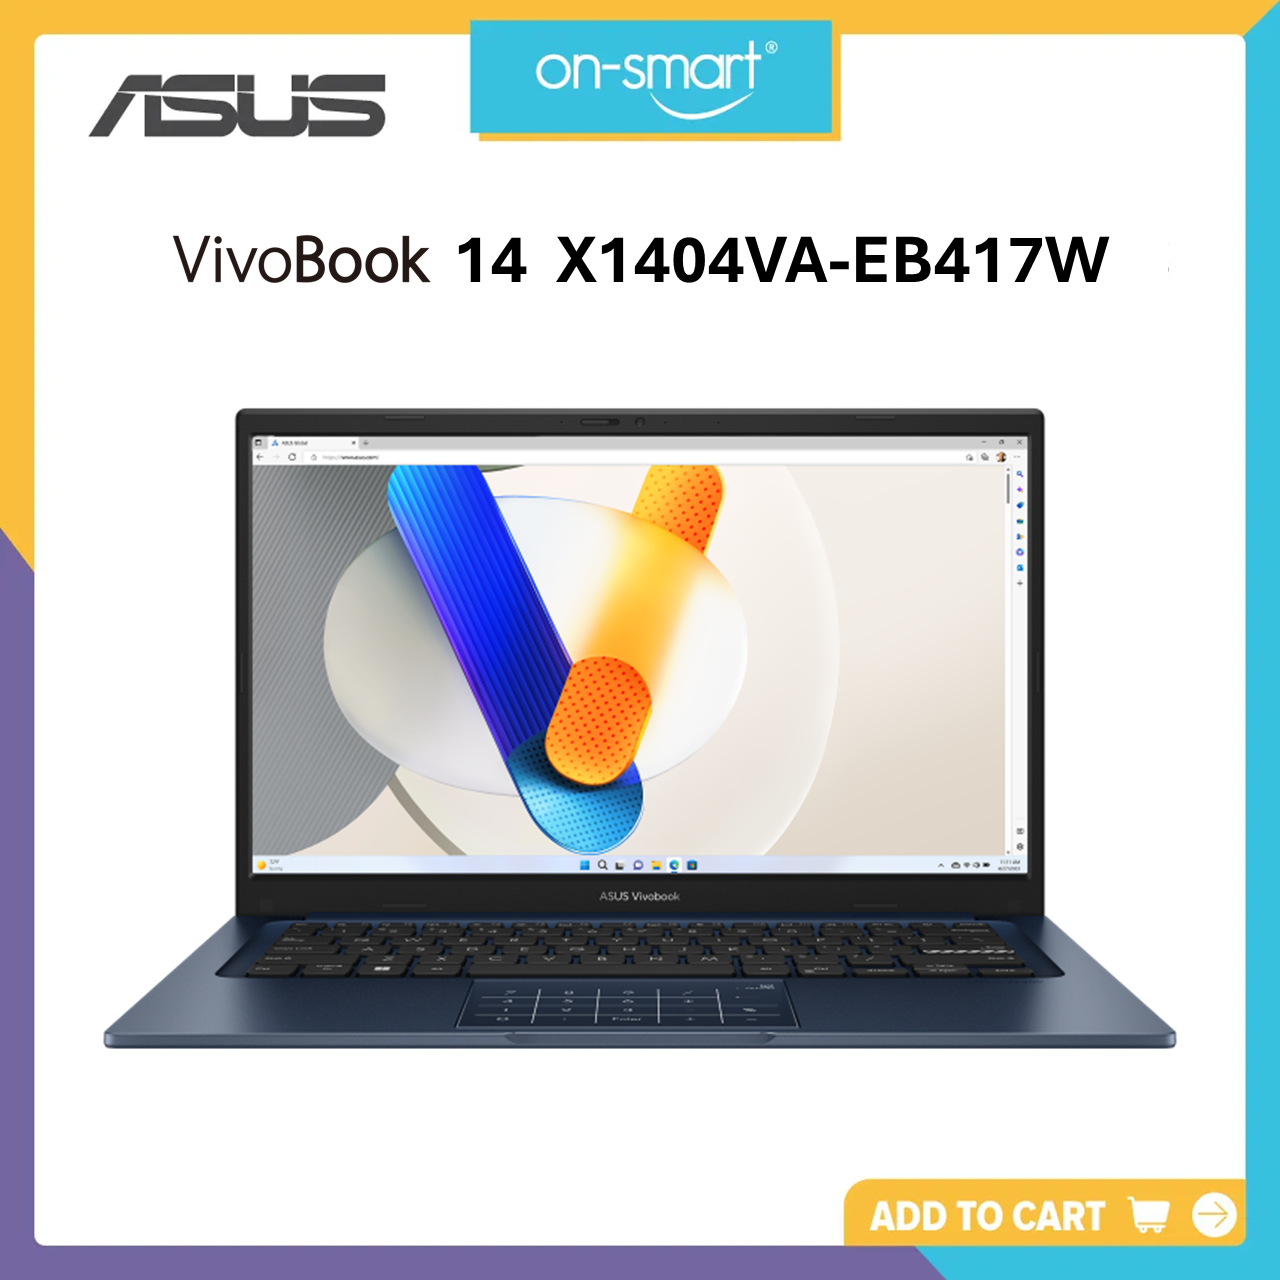 ASUS Vivobook 14 X1404VA-EB417W